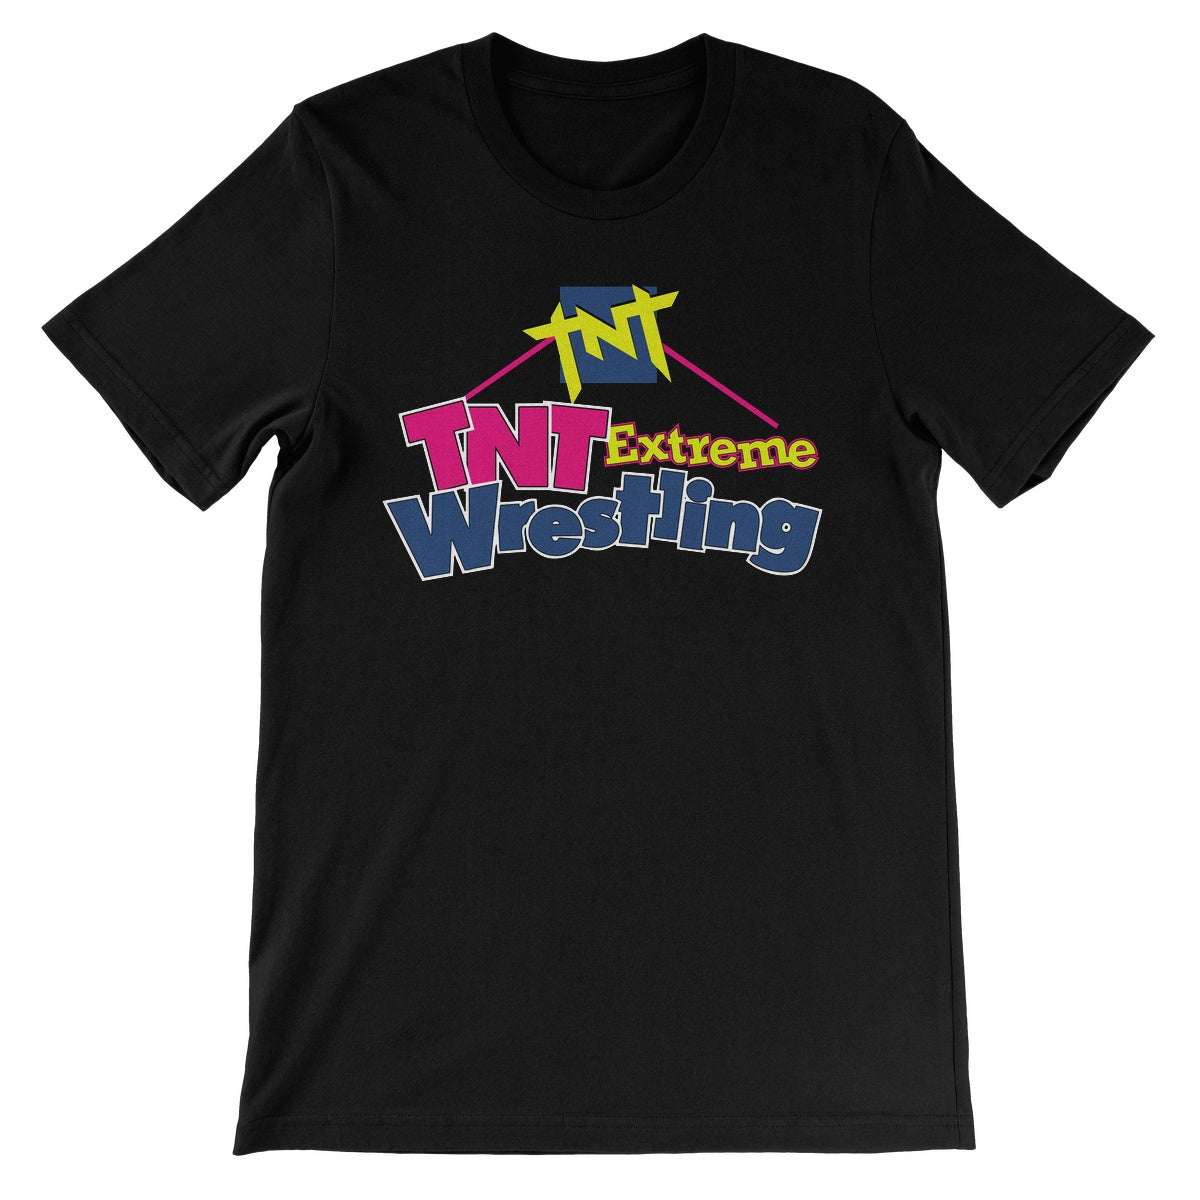 TNT Extreme Wrestling HOUSE Unisex Short Sleeve T-Shirt